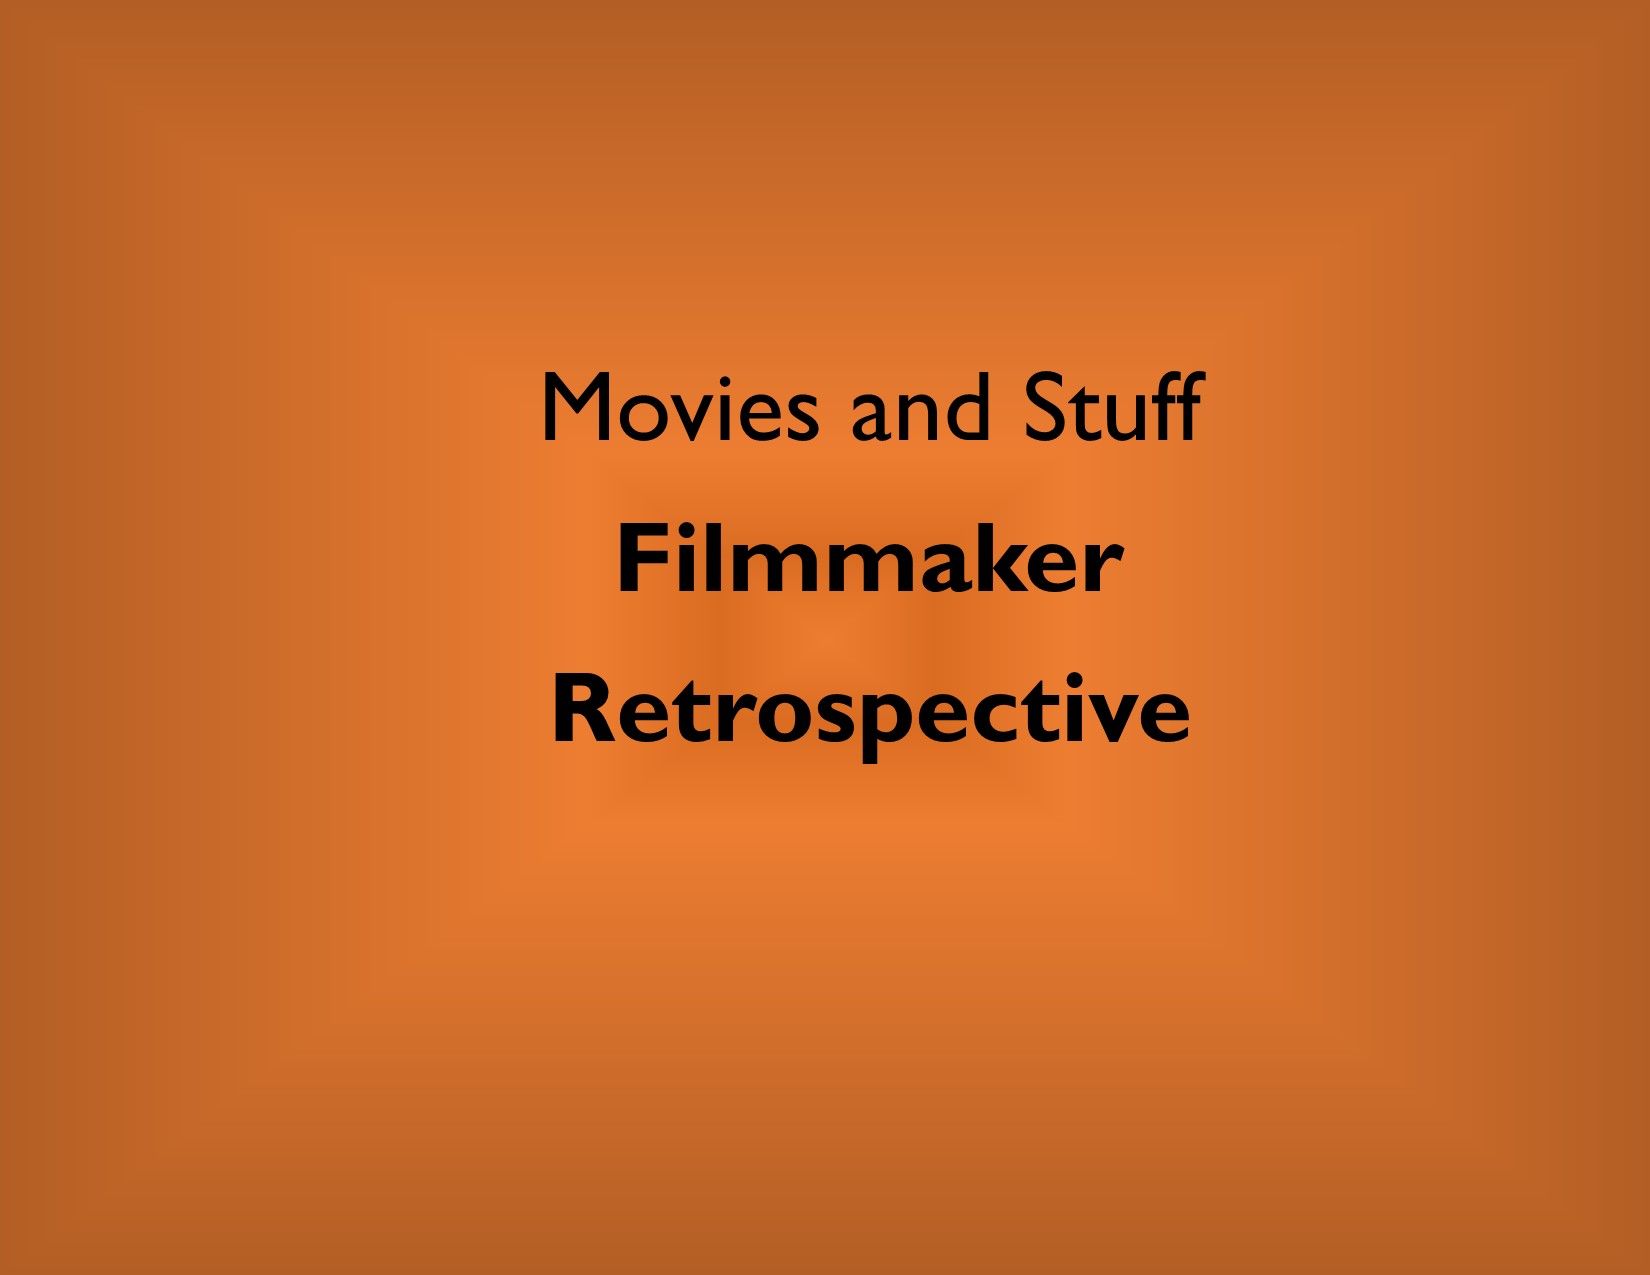 MaS Filmmaker Retrospective